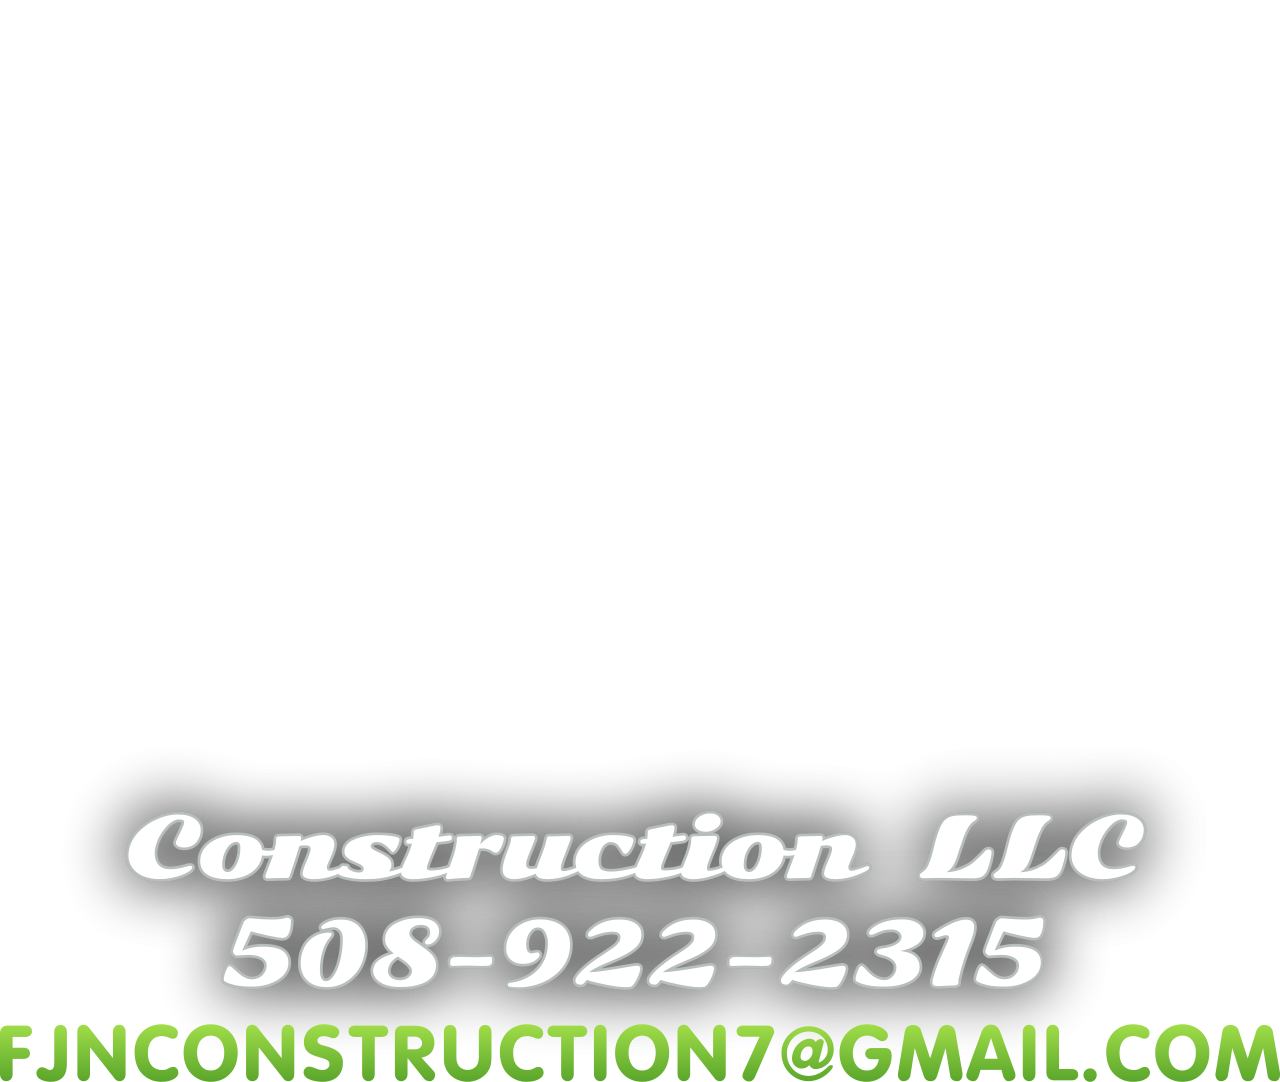 FJN 's web page